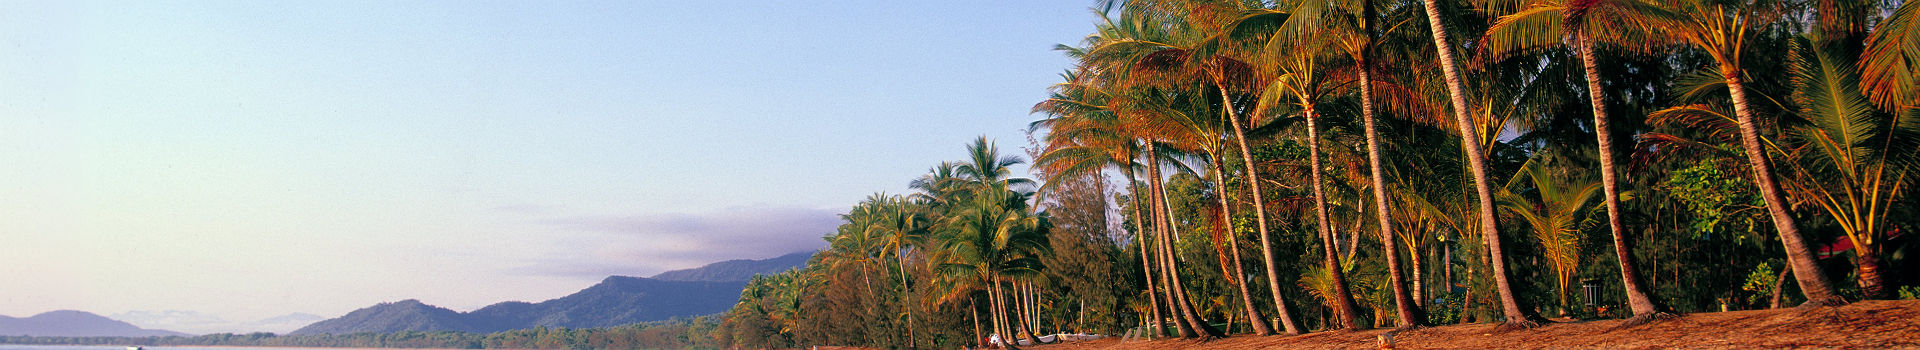 Australie - Vue sur la plage Palm Cove, Cairns